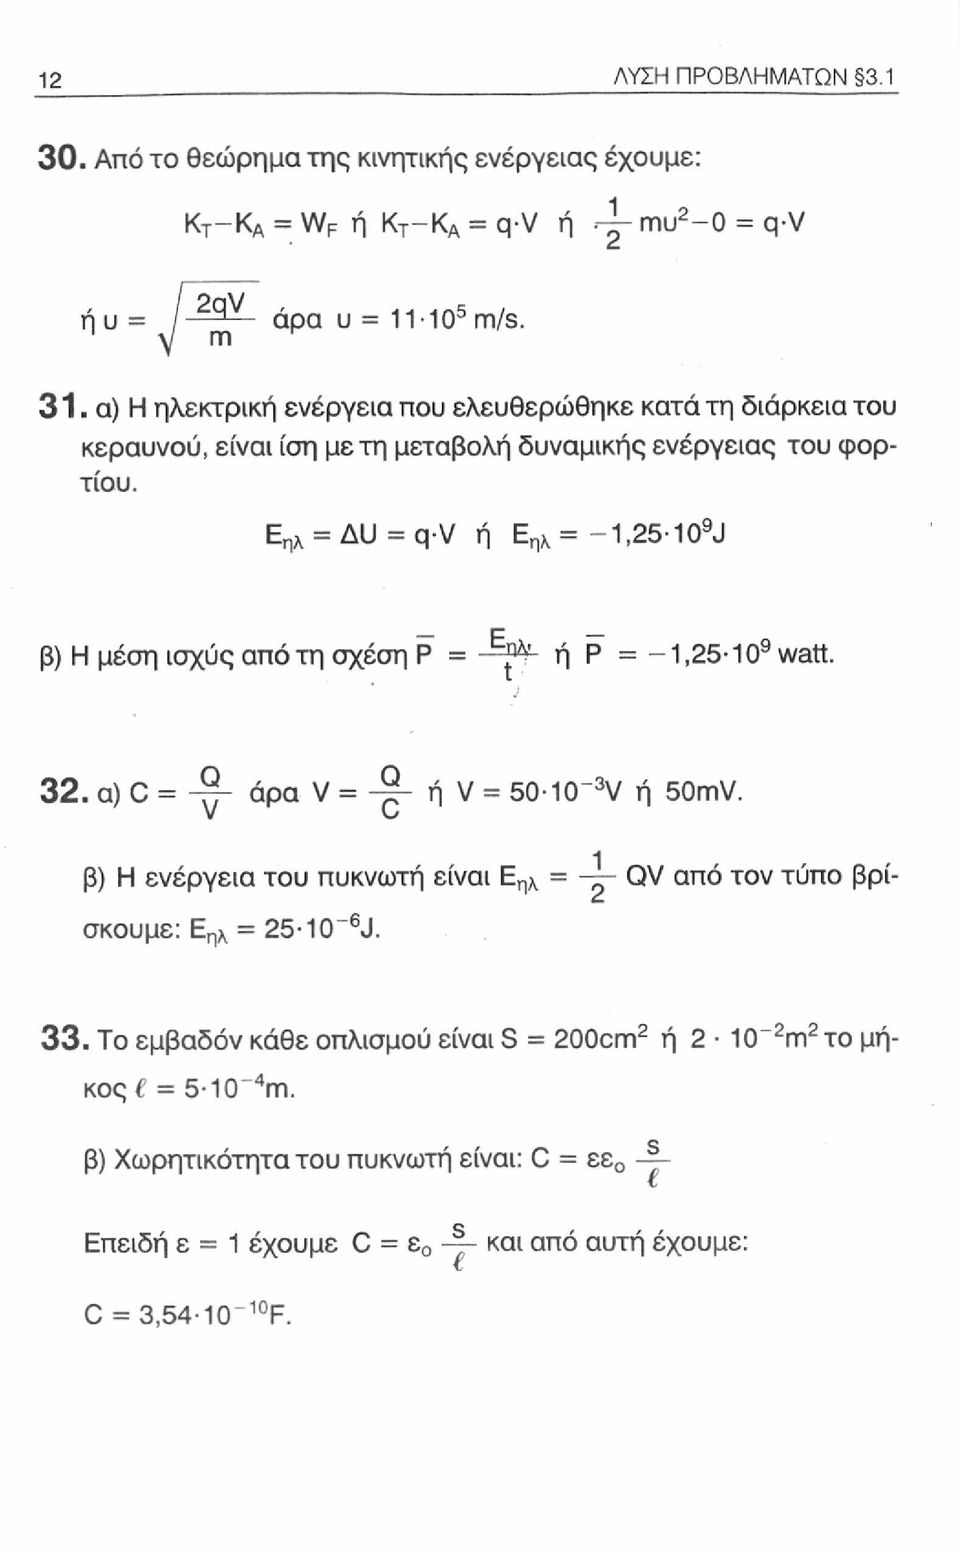 Ε ηλ = ΔΙΙ = q-v ή Ε ηλ = -1,25-10 9 J β) Η μέση ισχύς από τη σχέση Ρ = ή Ρ = -1,25-10 9 watt. 32. α) C = -γ- άρα V = ή V = 50-10~ 3 V ή 50mV.